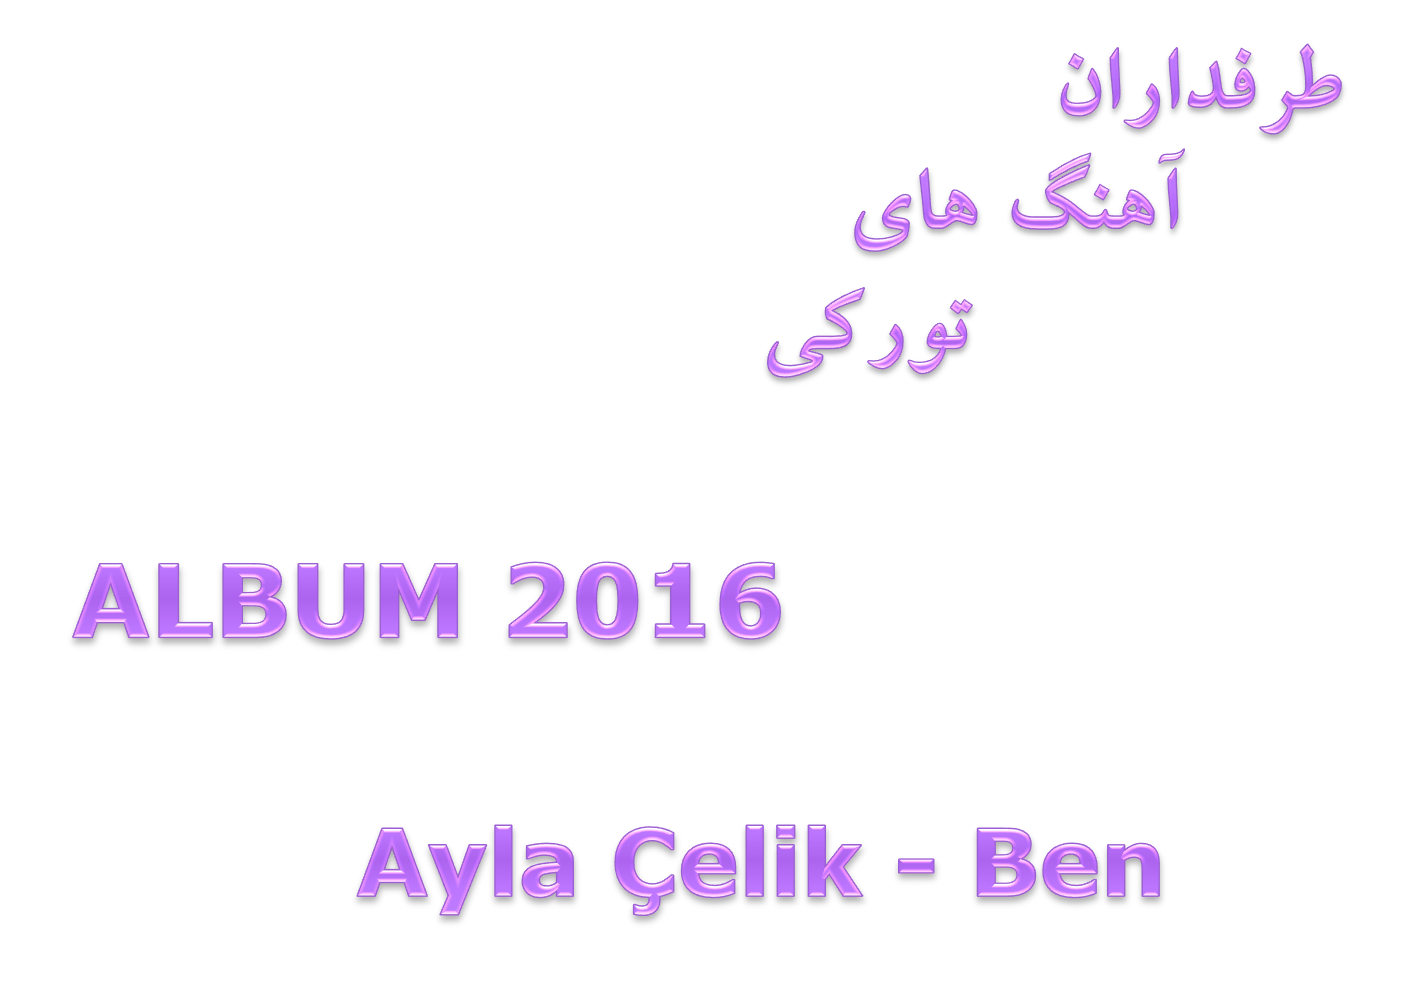 دانلود آلبوم بسیار زیبای Ayla Çelik به نام  Ben